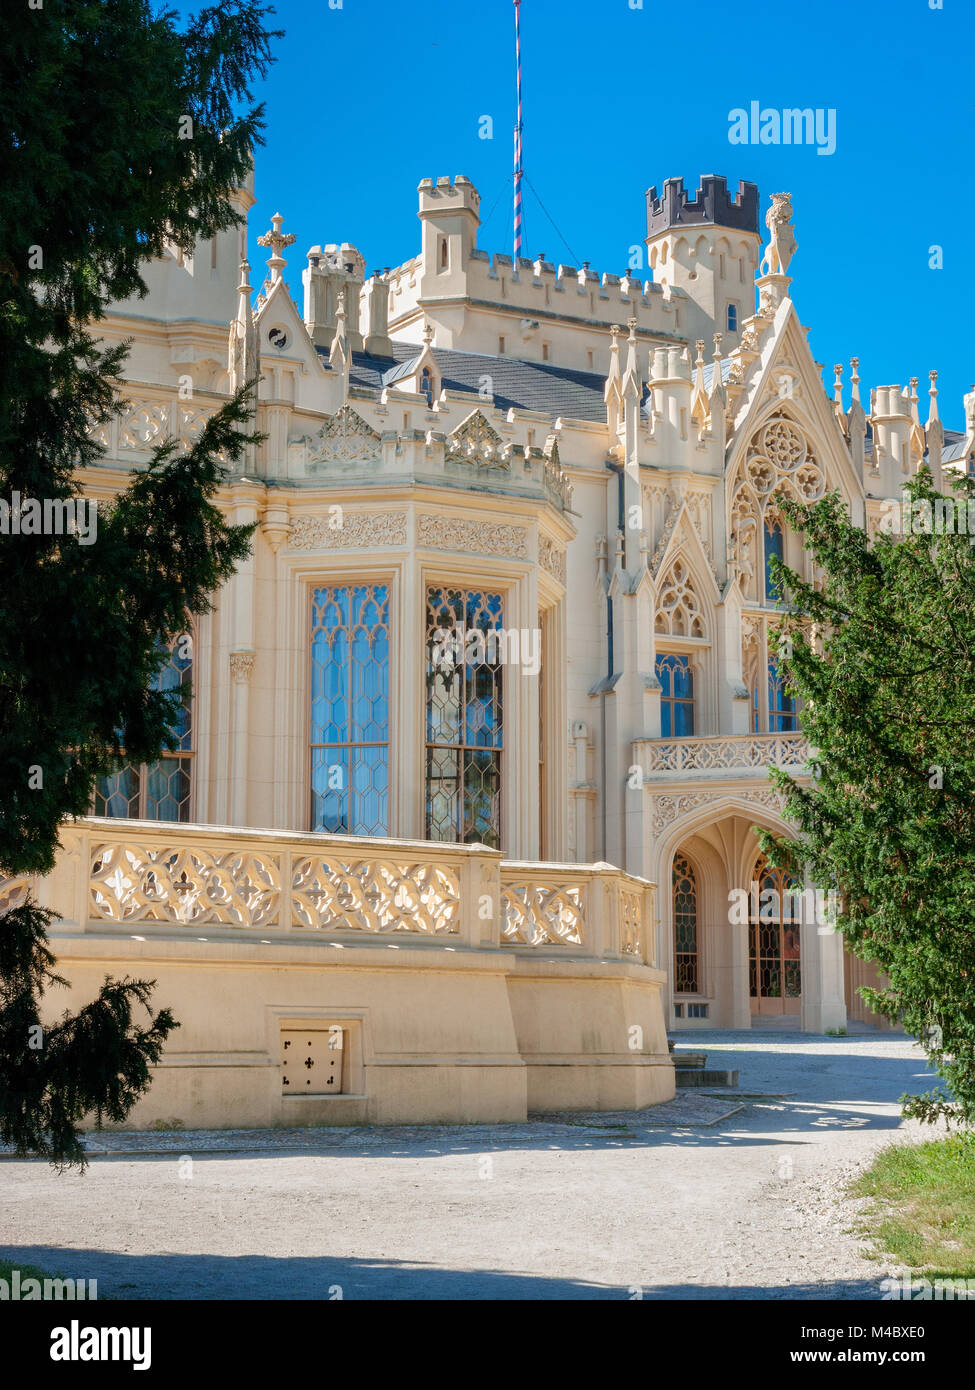 Lednice Palace, dem ehemaligen Liechtenstein Sommerresidenz, Lednice-Valtice Areal, Südmähren, Tschechische Republik, Europa Stockfoto